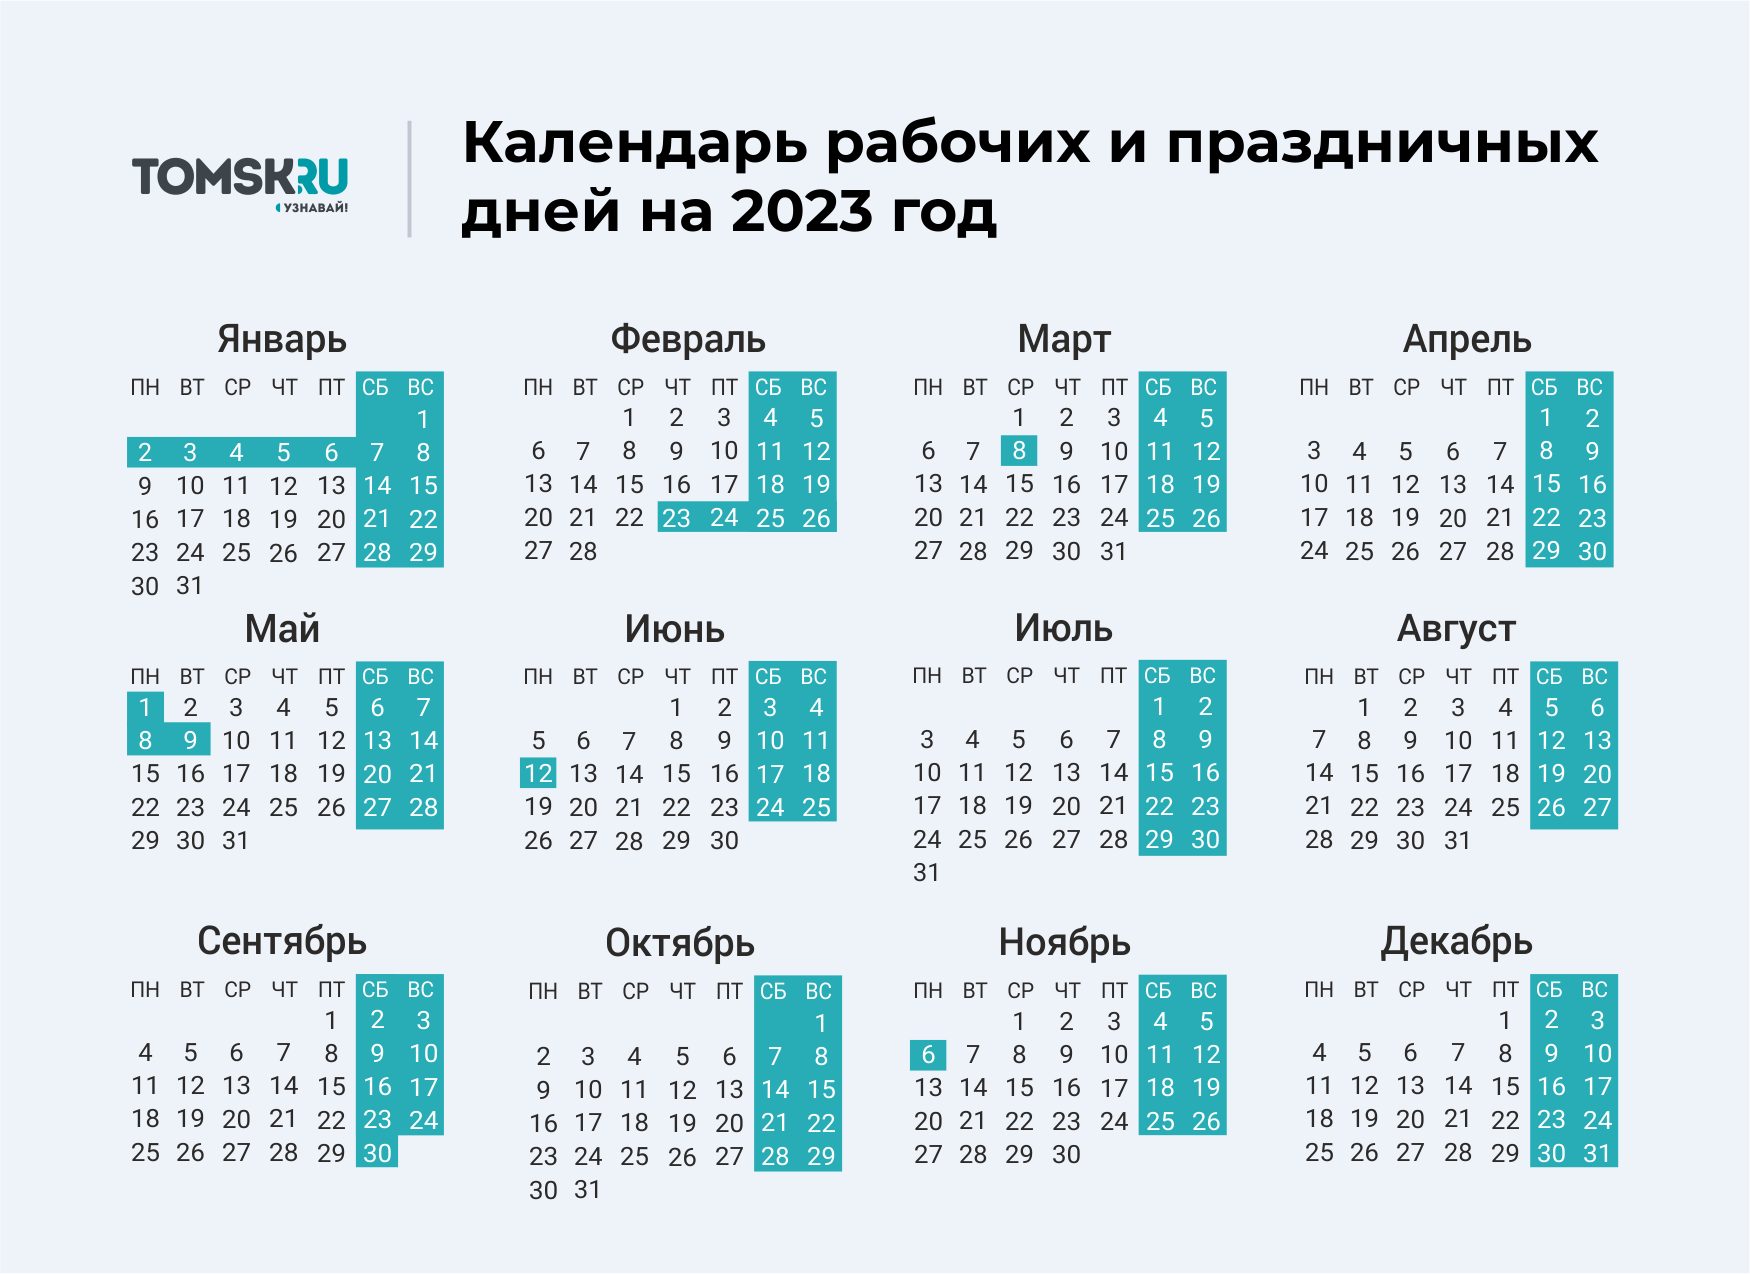 Выходные дни в 2023 году в России календарь. Календарь выходных и праздничных дней на 2023 год в России. Календарь праздничных выходеыхв 2023 году. Календарь на 2023 год с праздниками и выходными выходные снизу. Календарь праздников рабочих дней на 2024 год